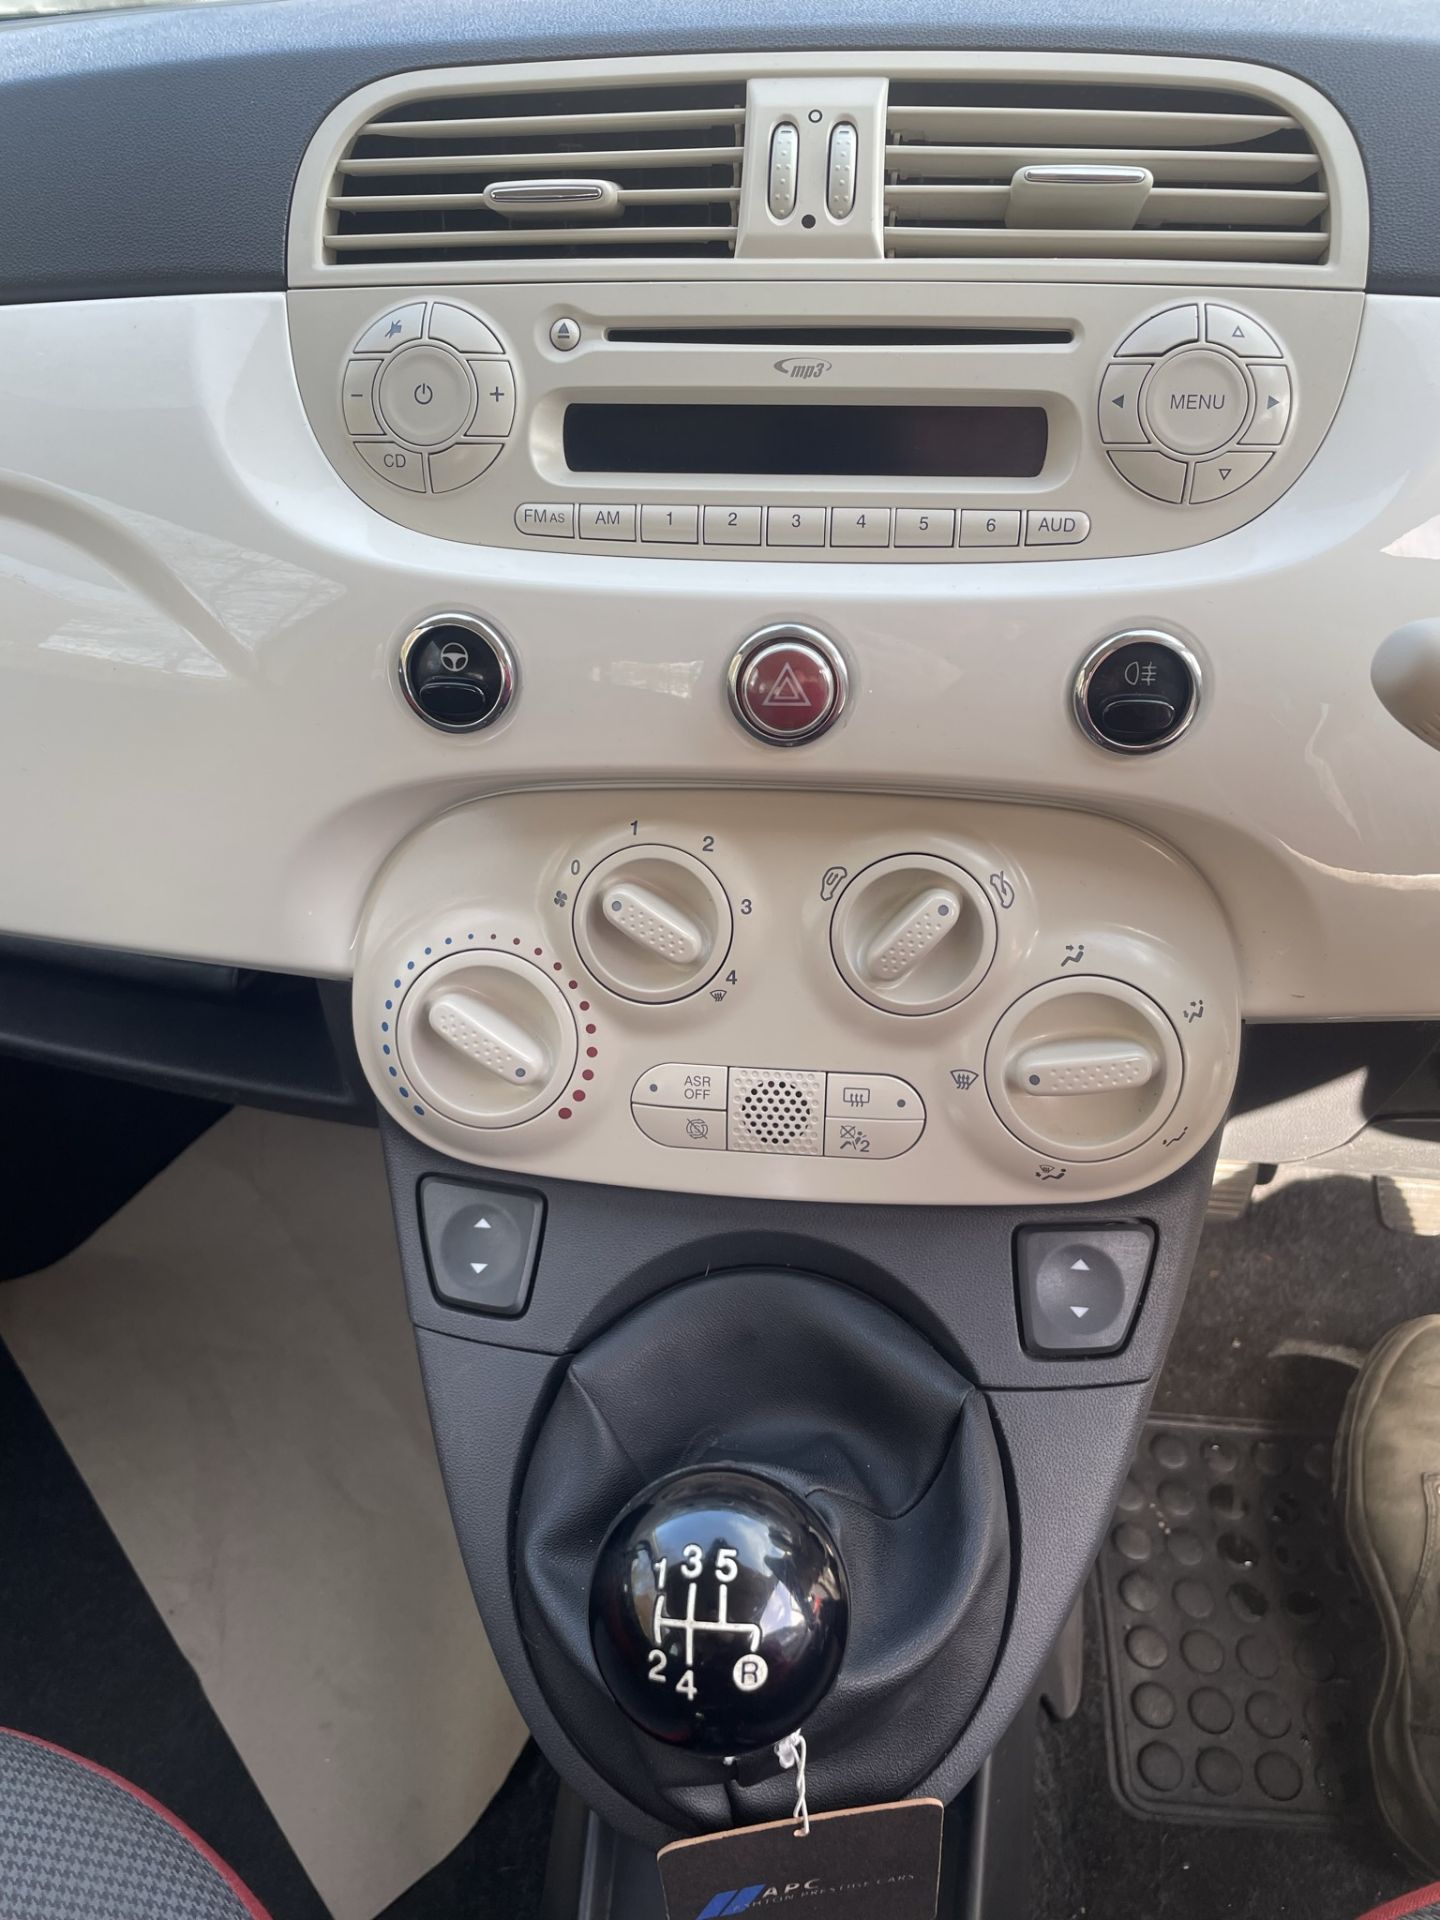 Fiat 500 POP 3 Door Hatchback | DU64 OWV | 76,122 Miles | zero VAT on hammer - Image 12 of 13